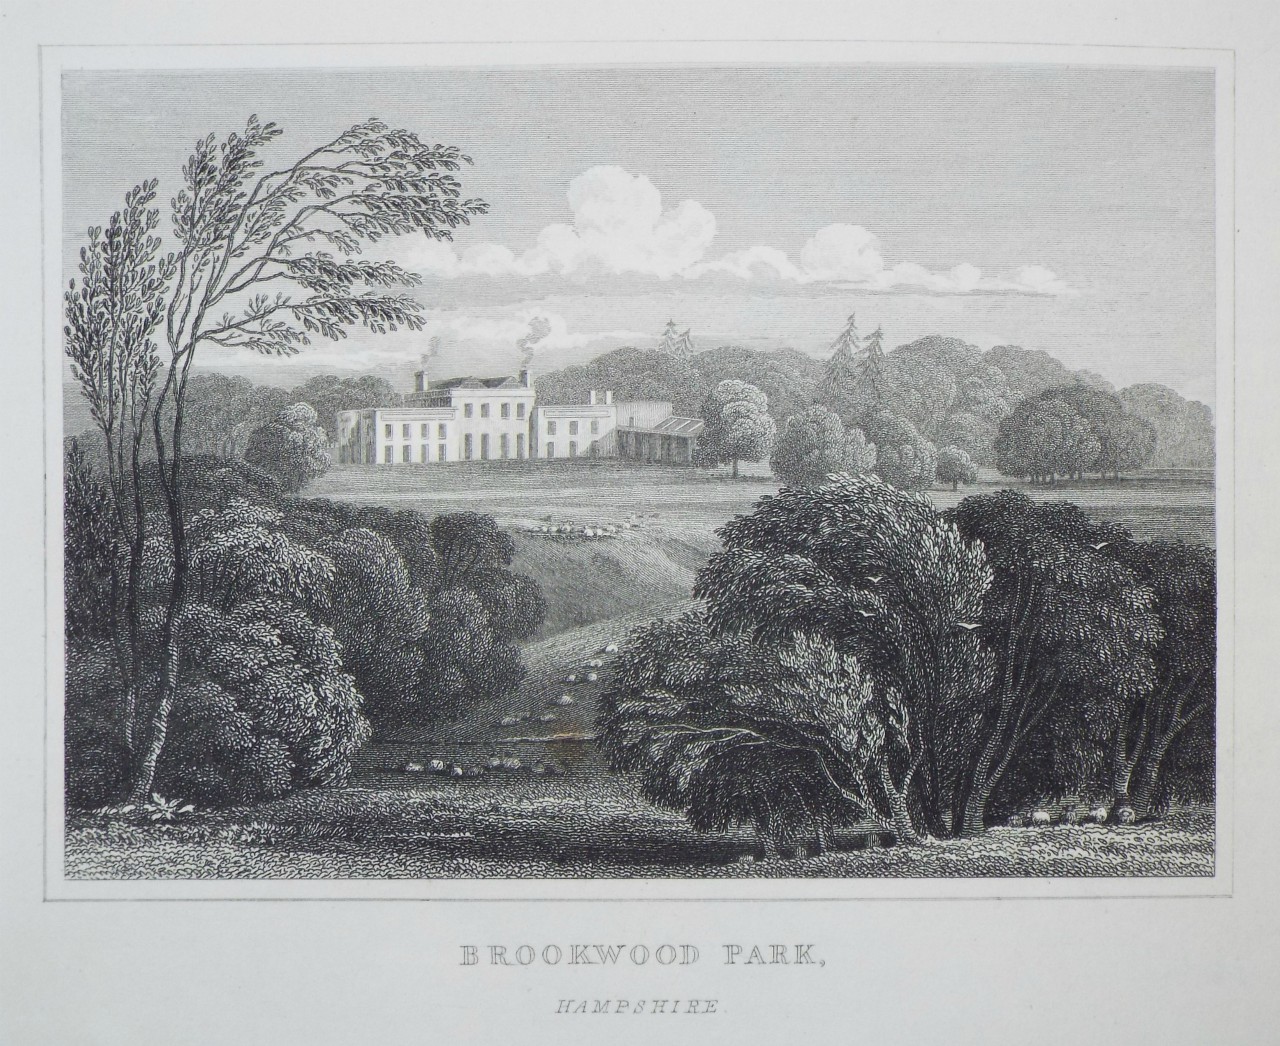 Print - Brookwood Park, Hampshire. - Byrne